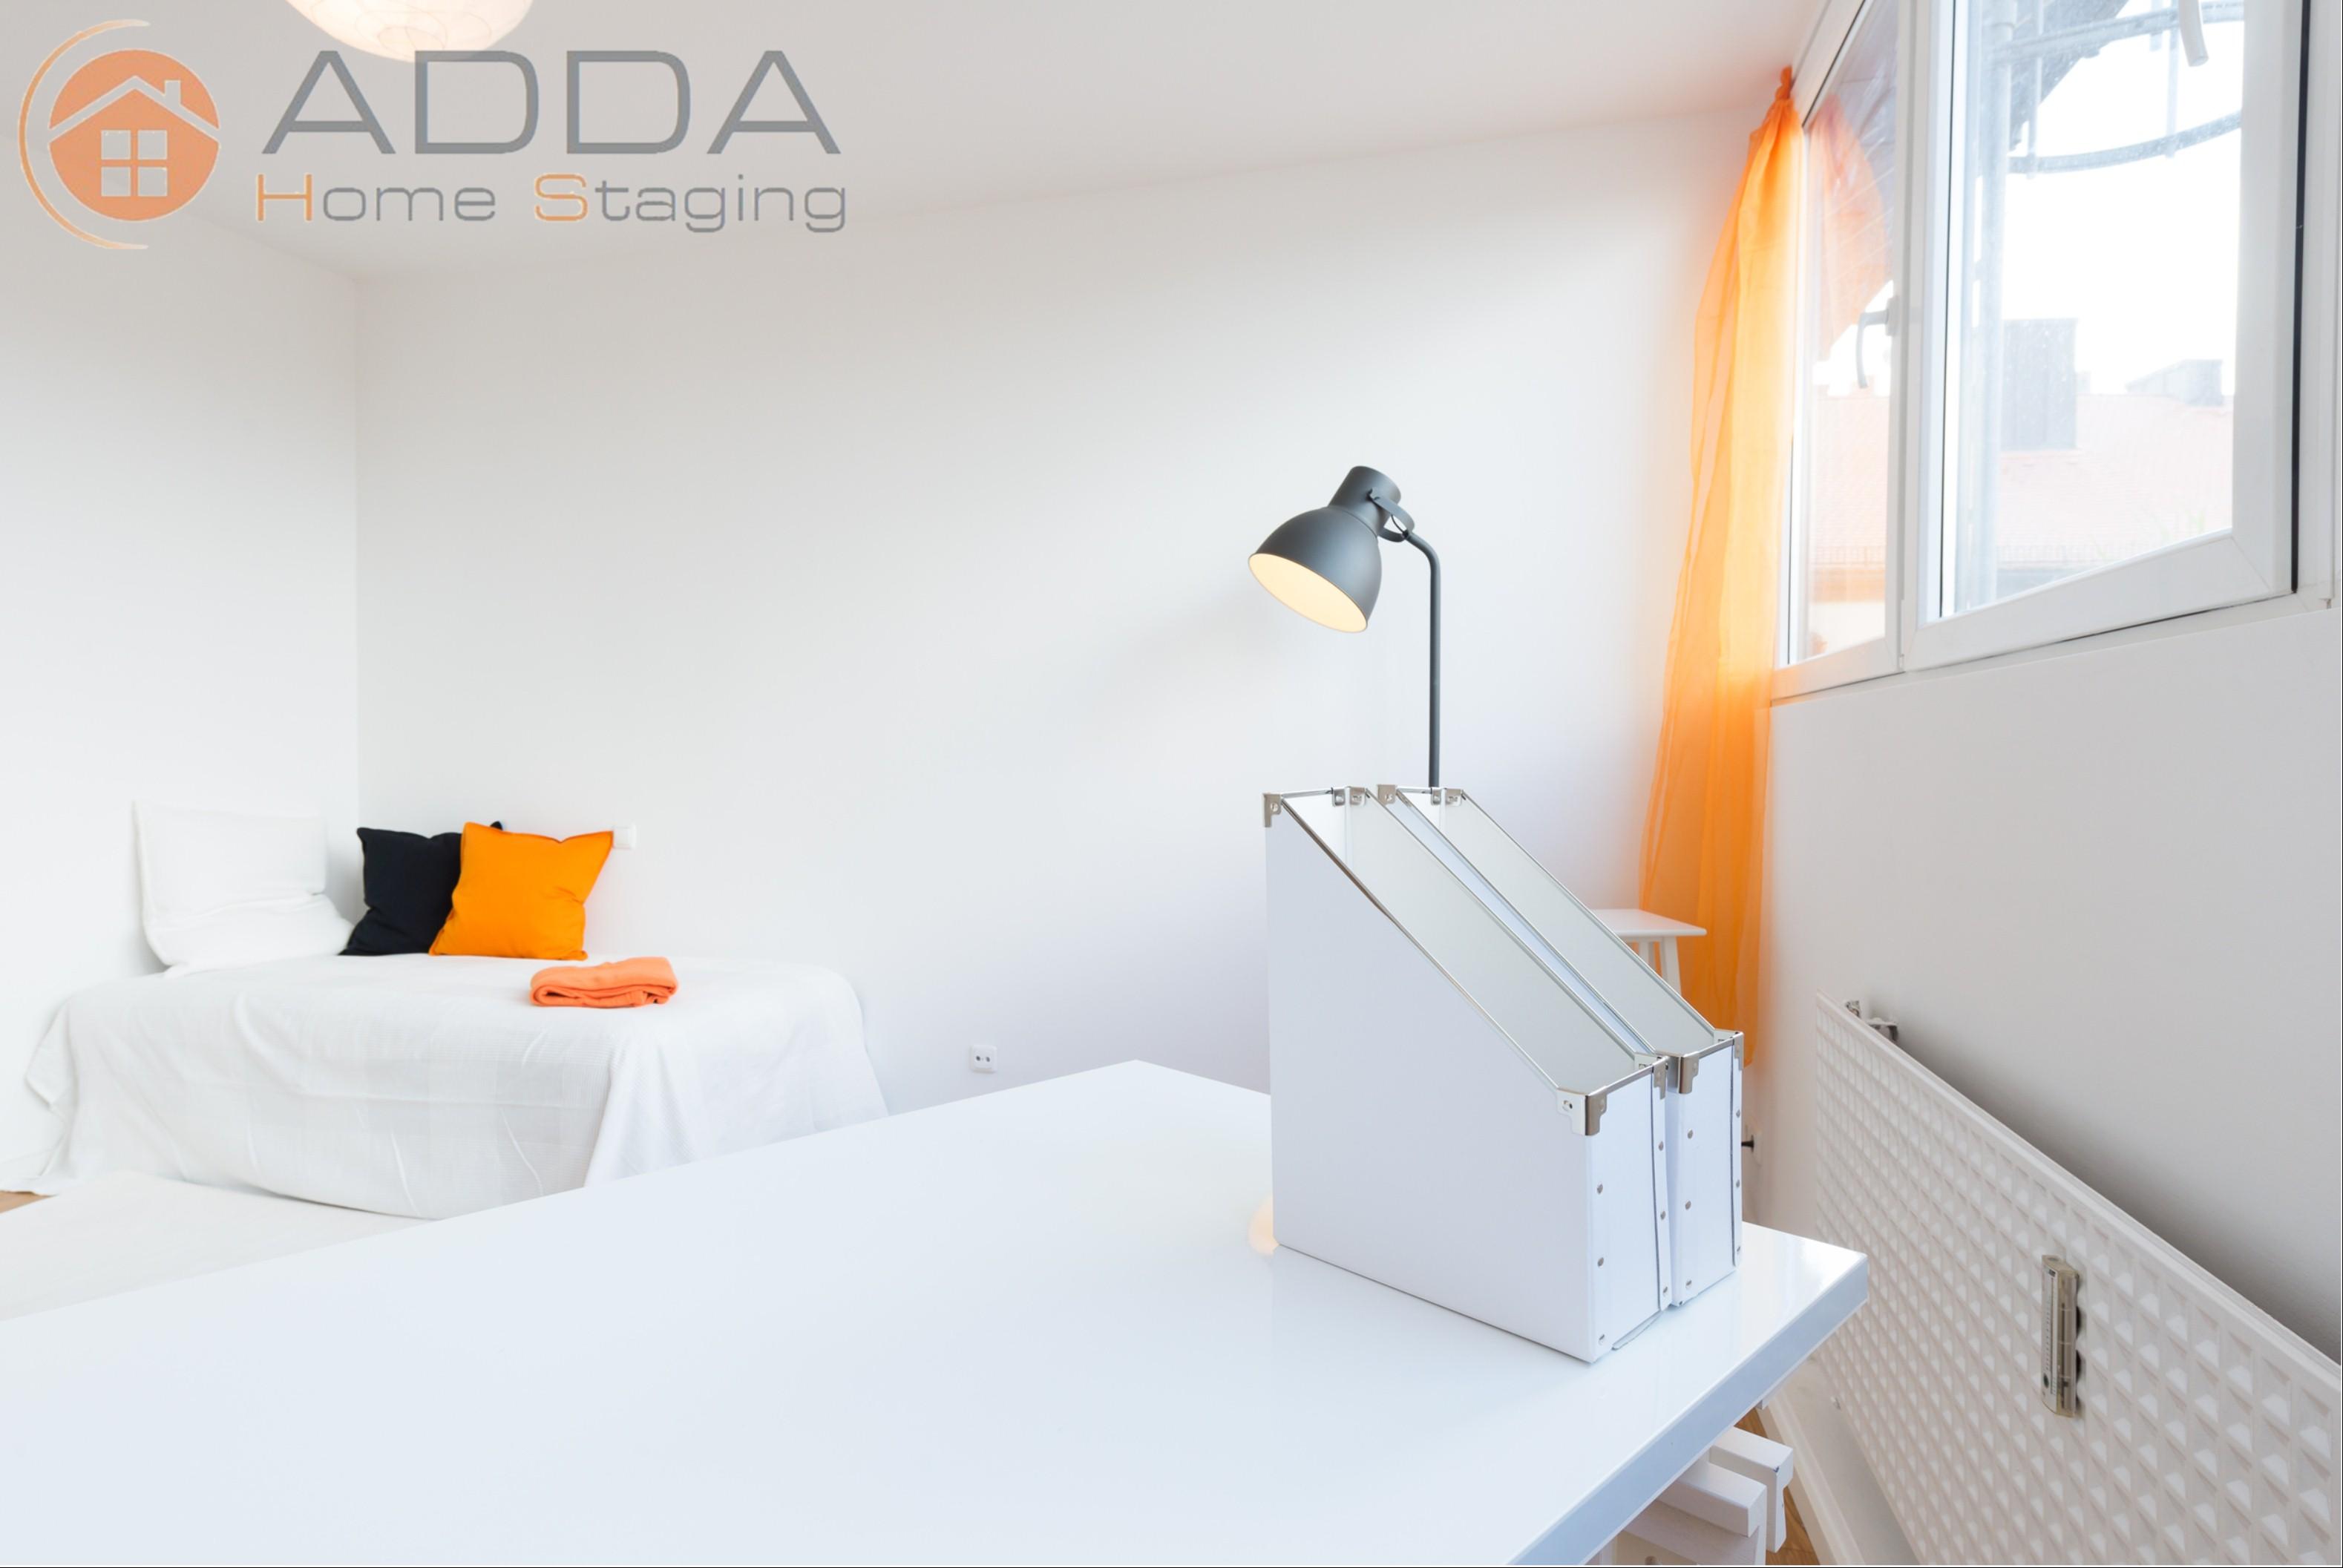 Büro / Zimmer nach dem Home Staging #schreibtisch #stehlampe ©ADDA Home Staging